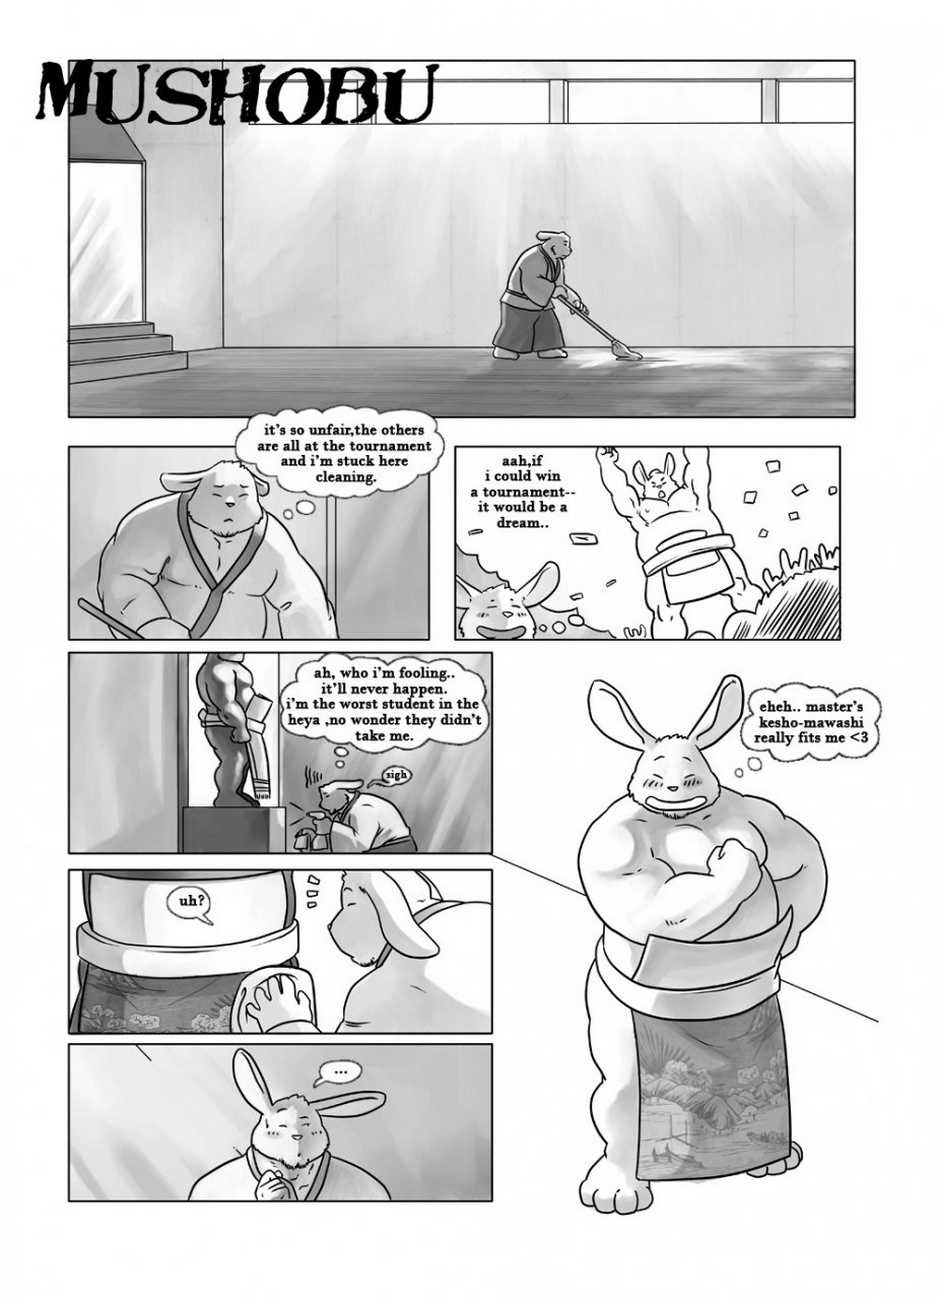 Mushobu page 2